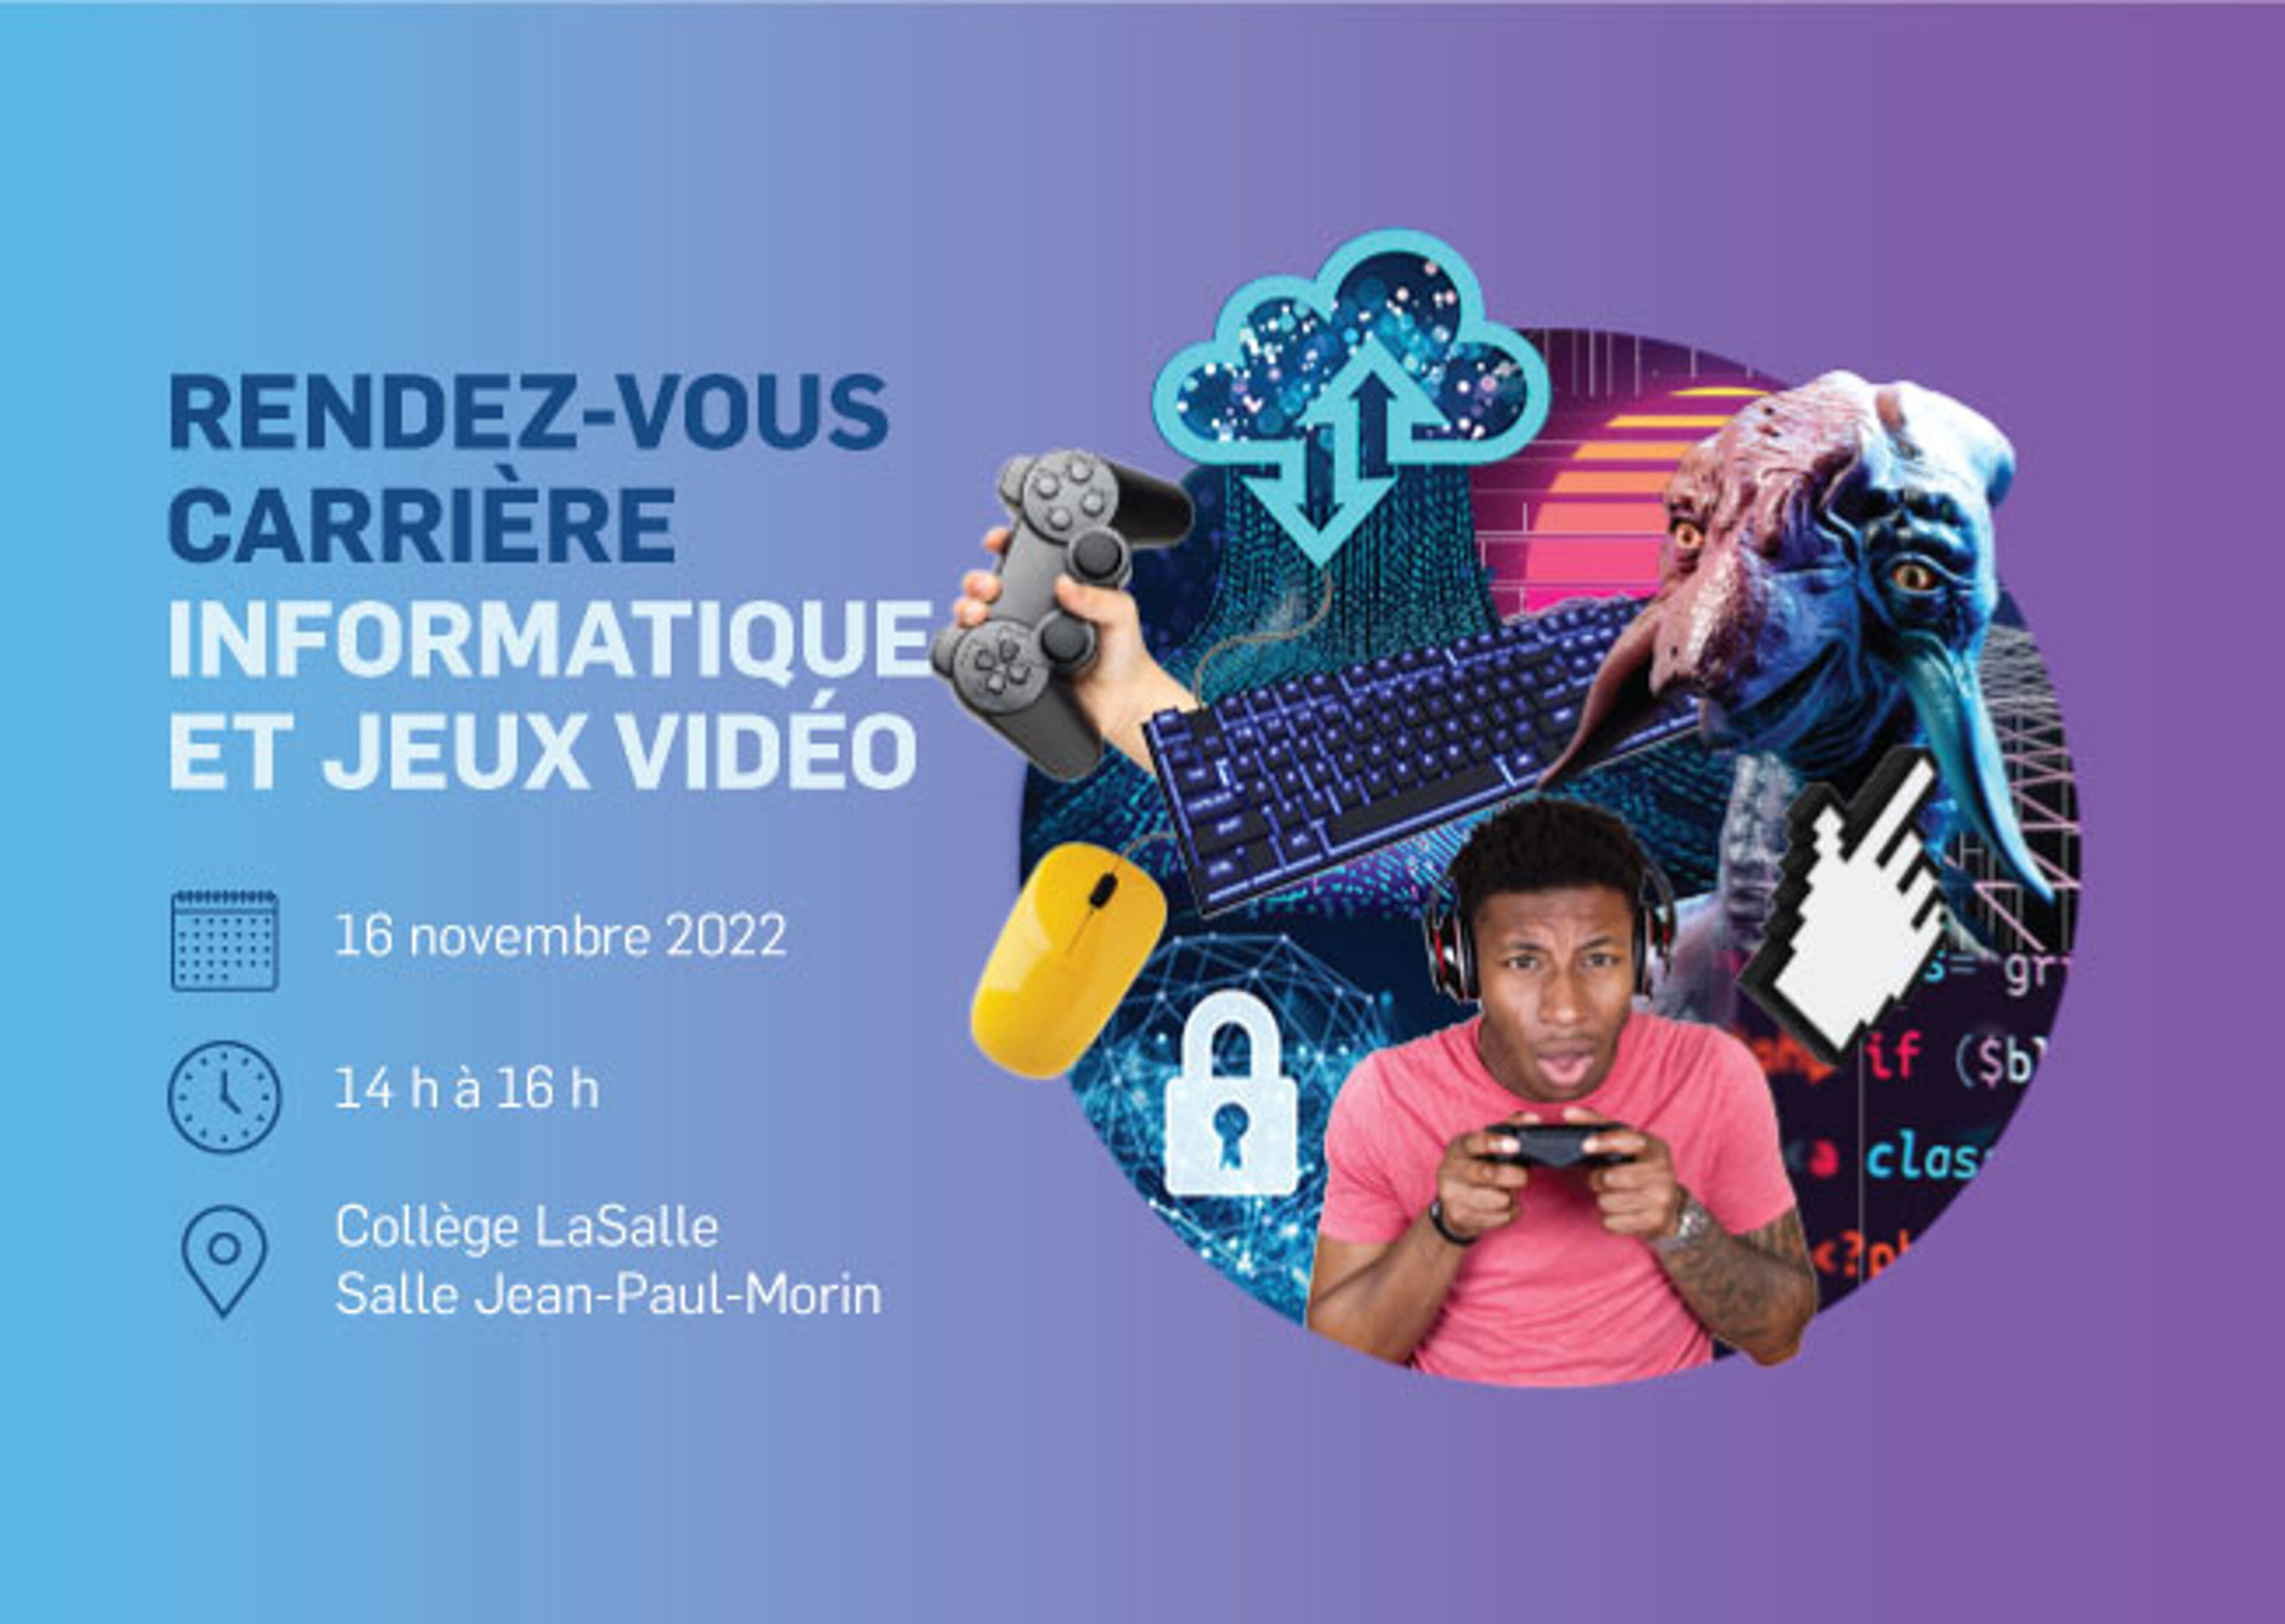 Publicité visuelle pour un événement de carrière axé sur l'informatique et les jeux vidéo le 16 novembre 2022, de 14 h à 16 h au Collège LaSalle, Salle Jean-Paul-Morin.